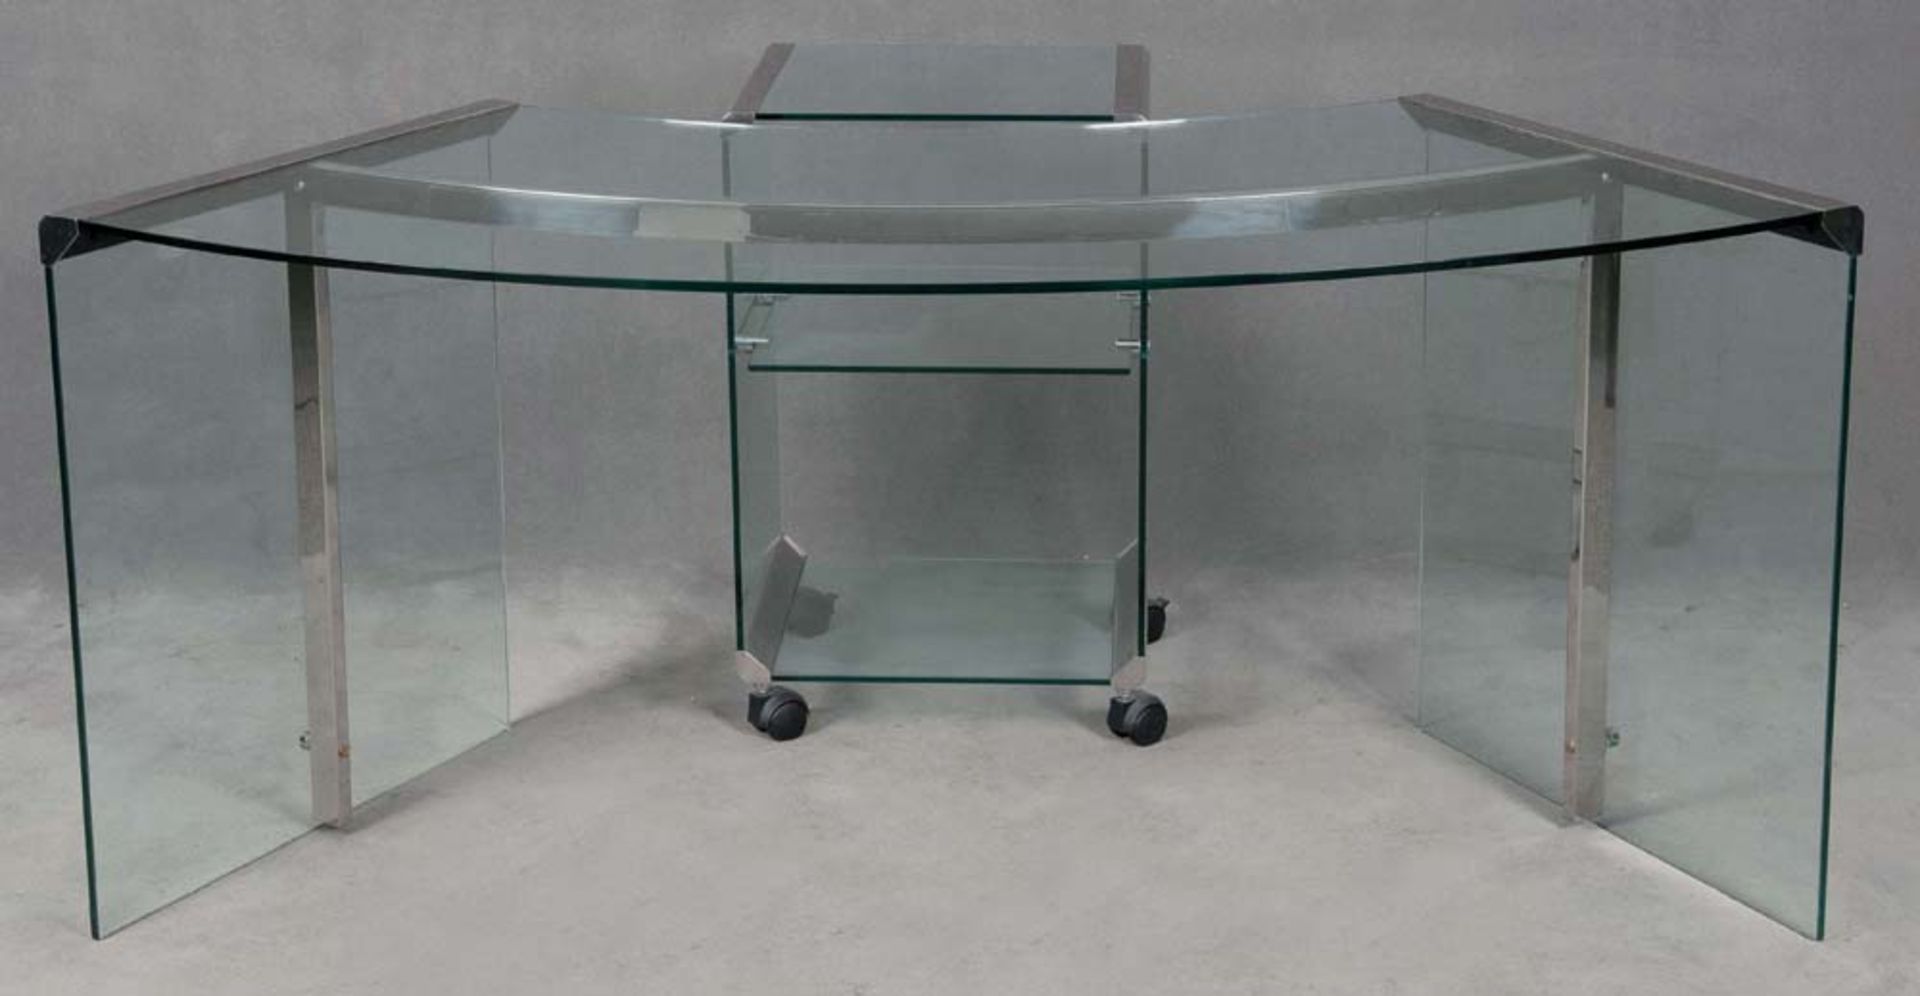 Halbrunder Glasschreibtisch mit Beischrank und Bürostuhl auf Rollen, H=74 cm, B=46,5 cm, T=41